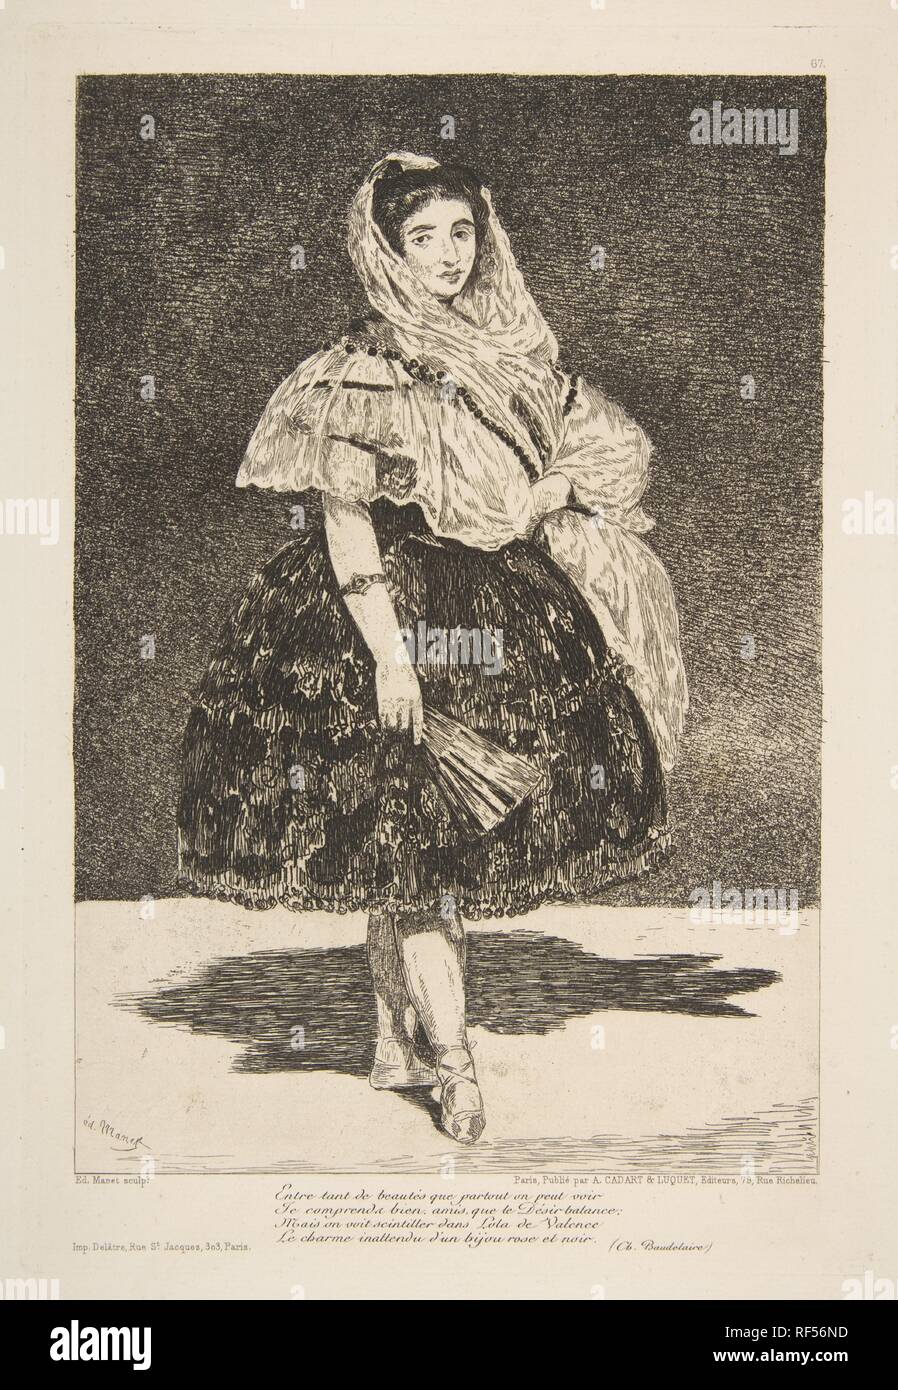 Lola de Valence. Artist: Édouard Manet (Französisch, Paris 1832-1883 Paris). Abmessungen: Platte: 10 3/8 x 7 1/8 in. (26,4 x 18,1 cm) Blatt: 15 9/16 x 11 5/8 in. (39,5 x 29,5 cm). Herausgeber: Cadart & Luquet. Datum: 1863. Museum: Metropolitan Museum of Art, New York, USA. Autor: Edouard Manet. BAUDELAIRE, Charles. Stockfoto